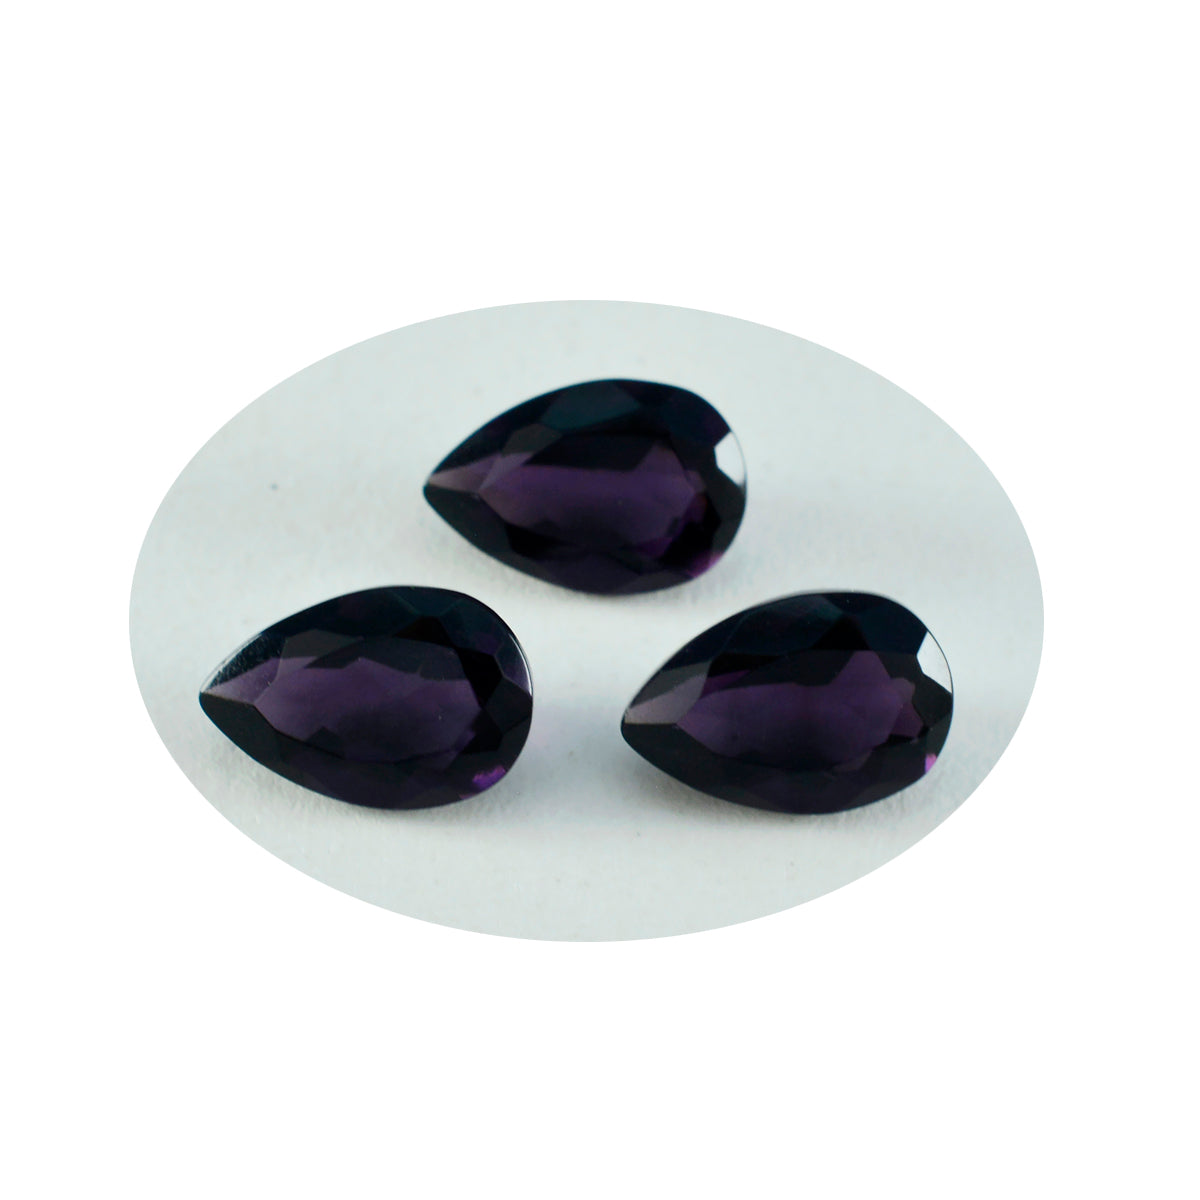 Riyogems 1 pièce améthyste violette cz à facettes 7x10mm en forme de poire qualité aaa gemme en vrac